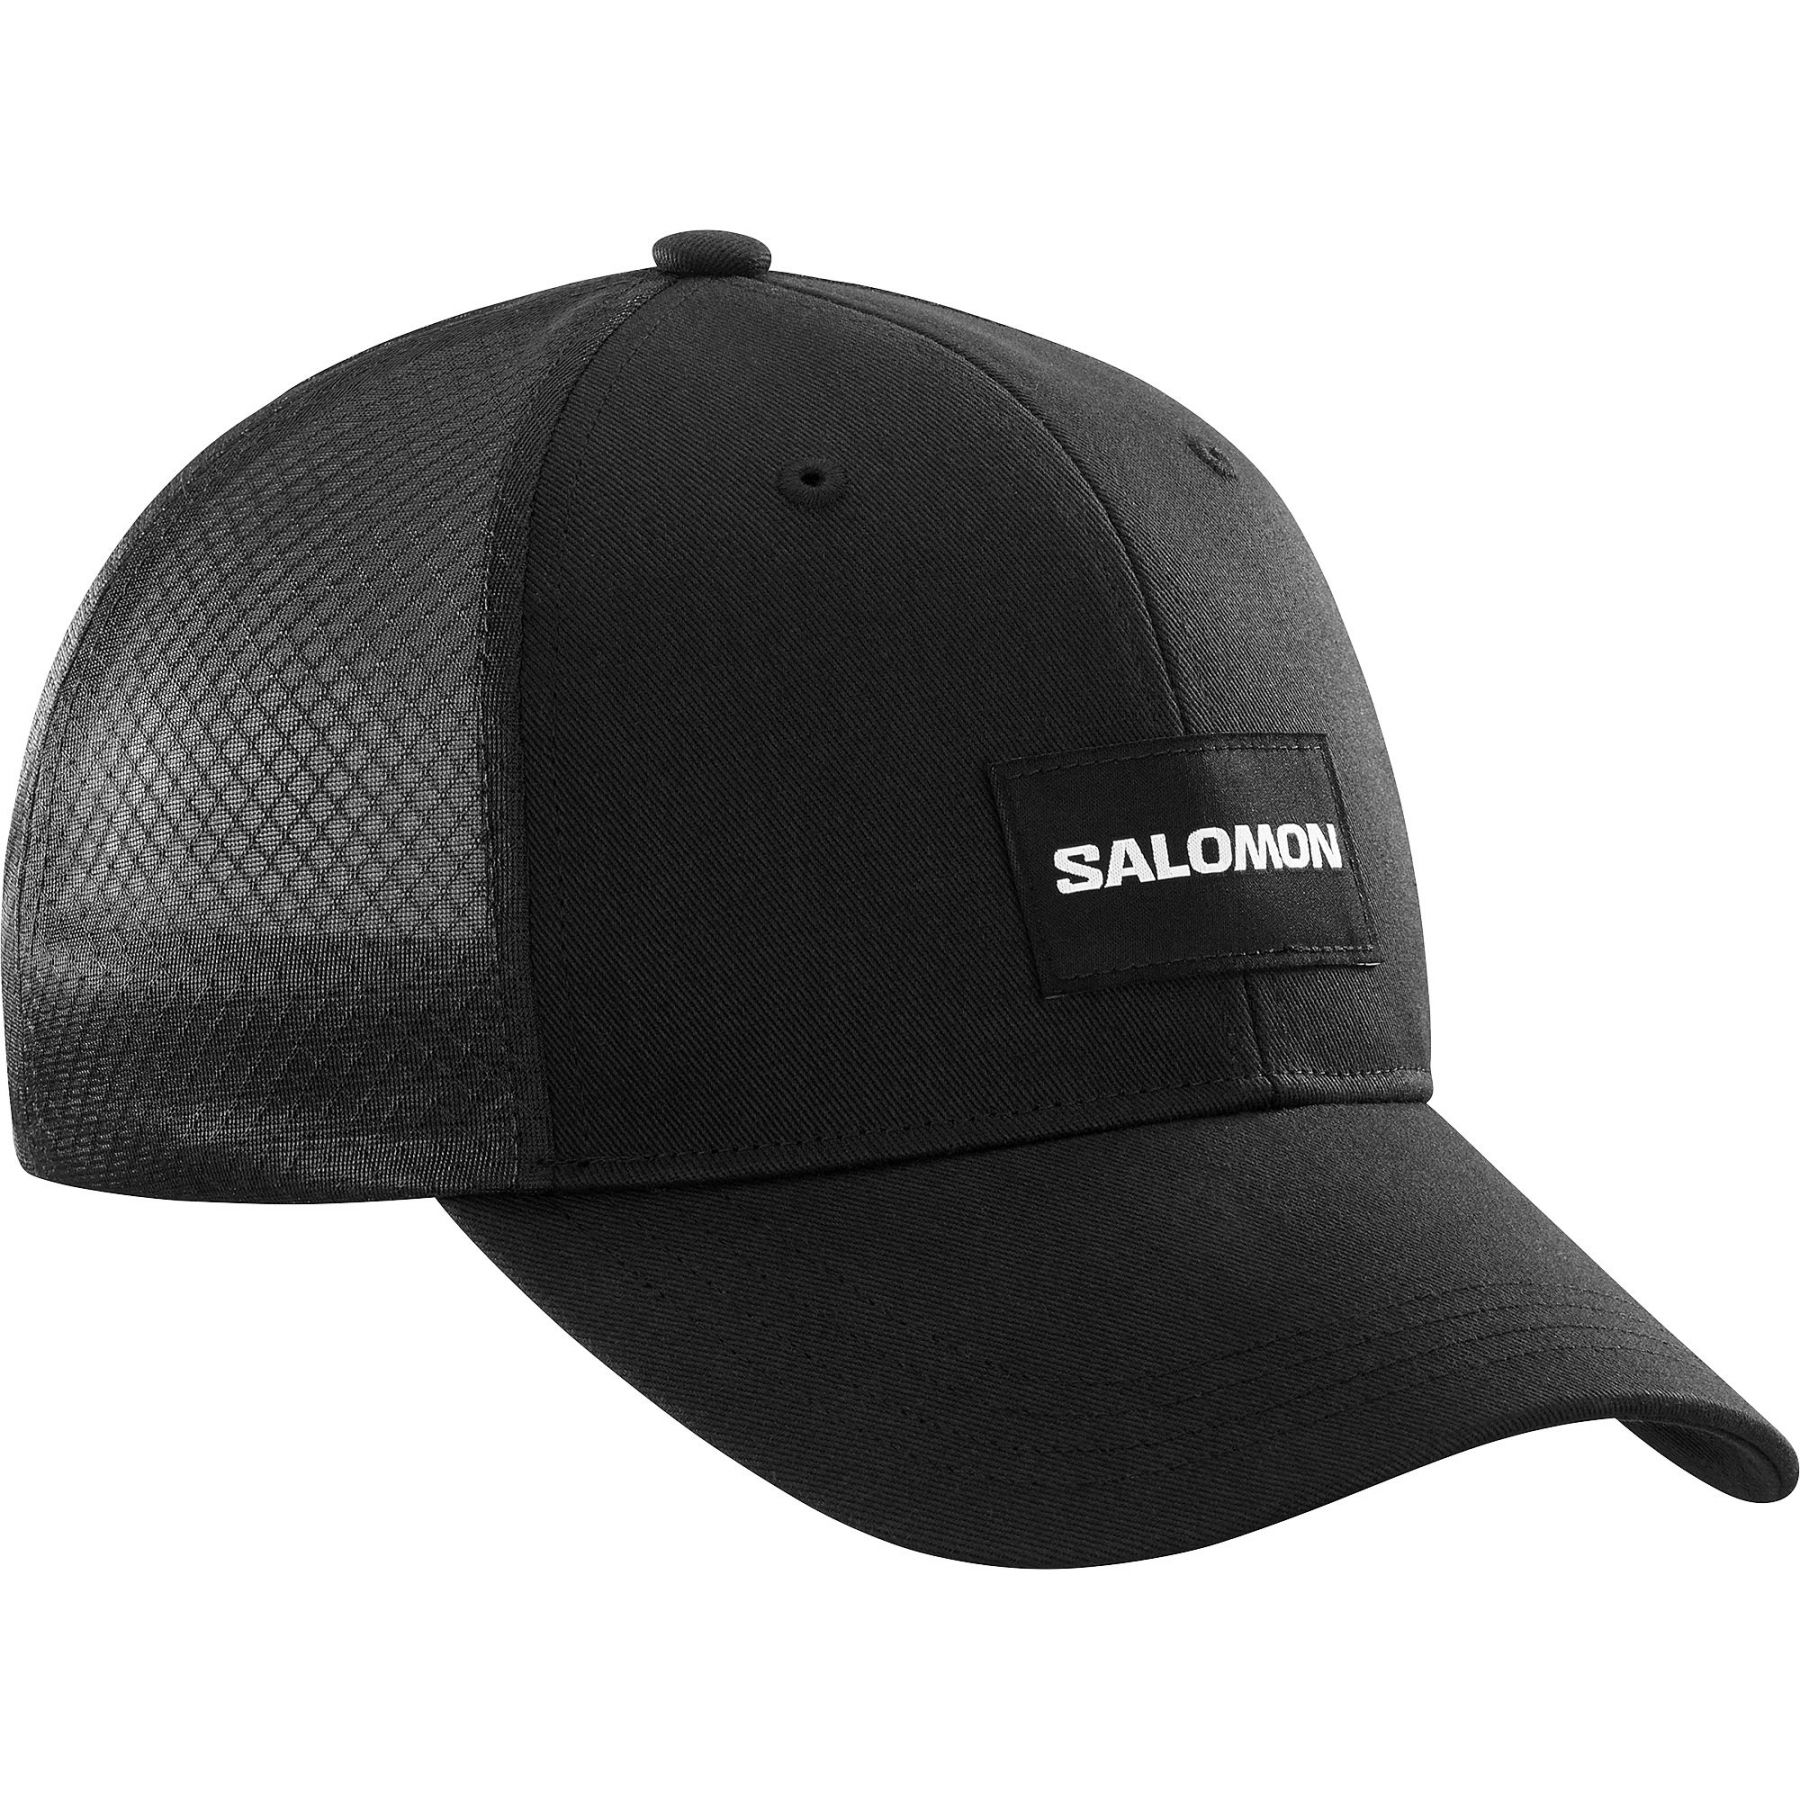 Brug Salomon Trucker Curved Cap, sort til en forbedret oplevelse